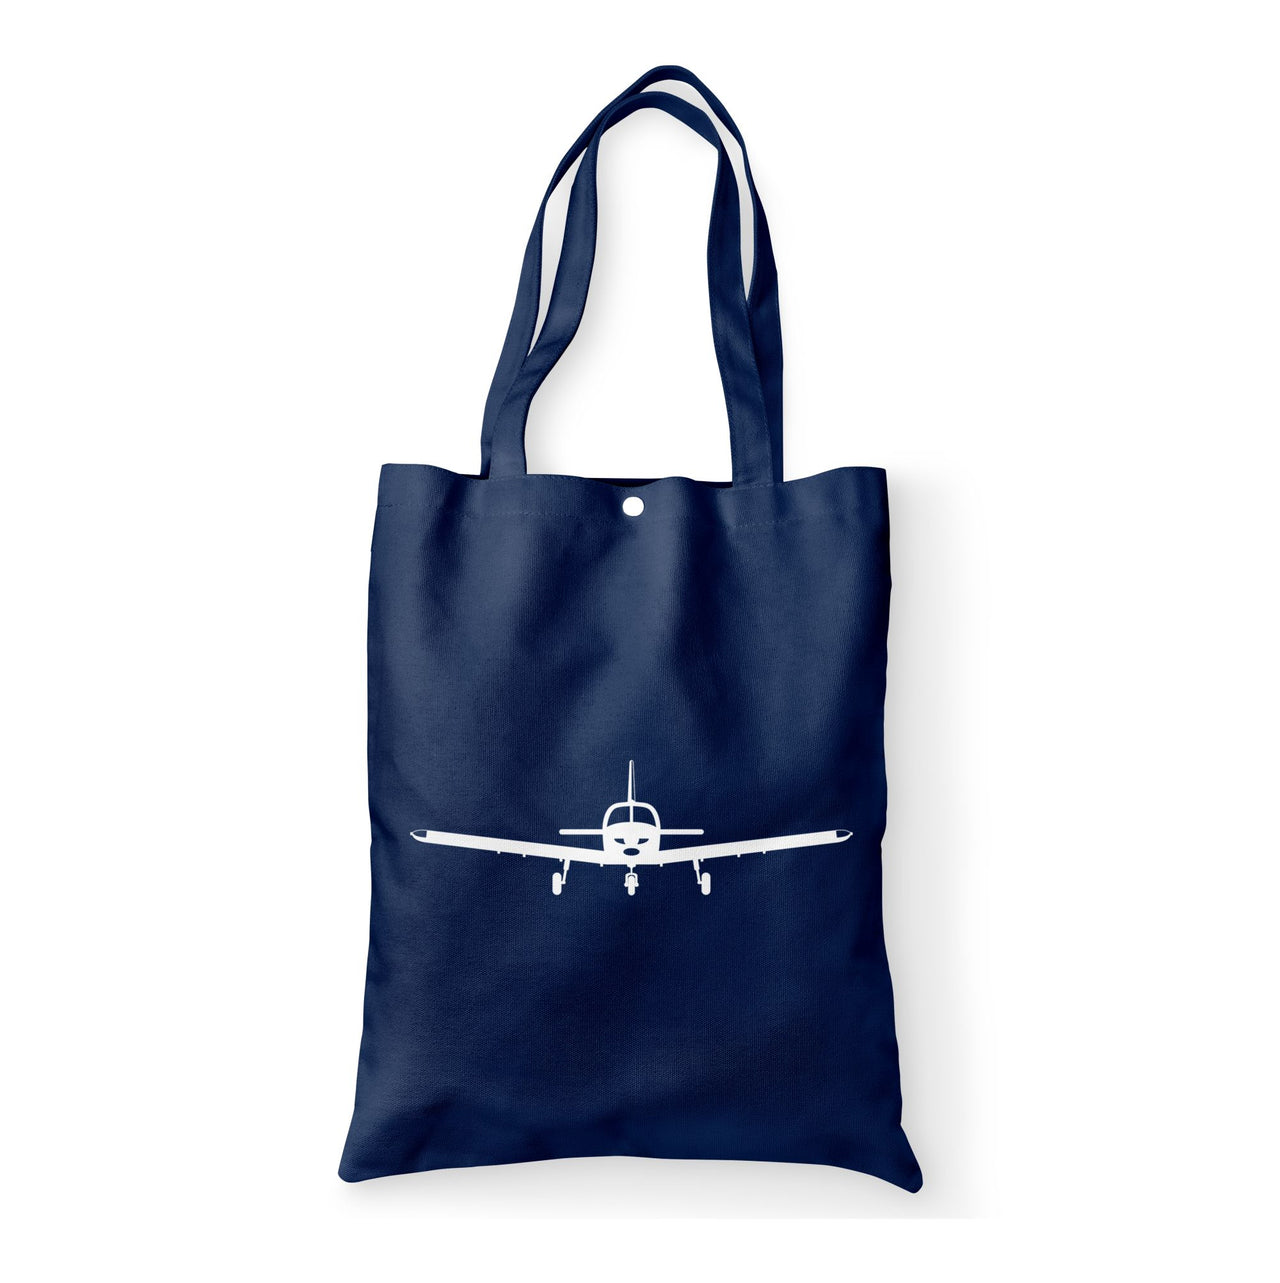 Piper PA28 Silhouette Plane Designed Tote Bags